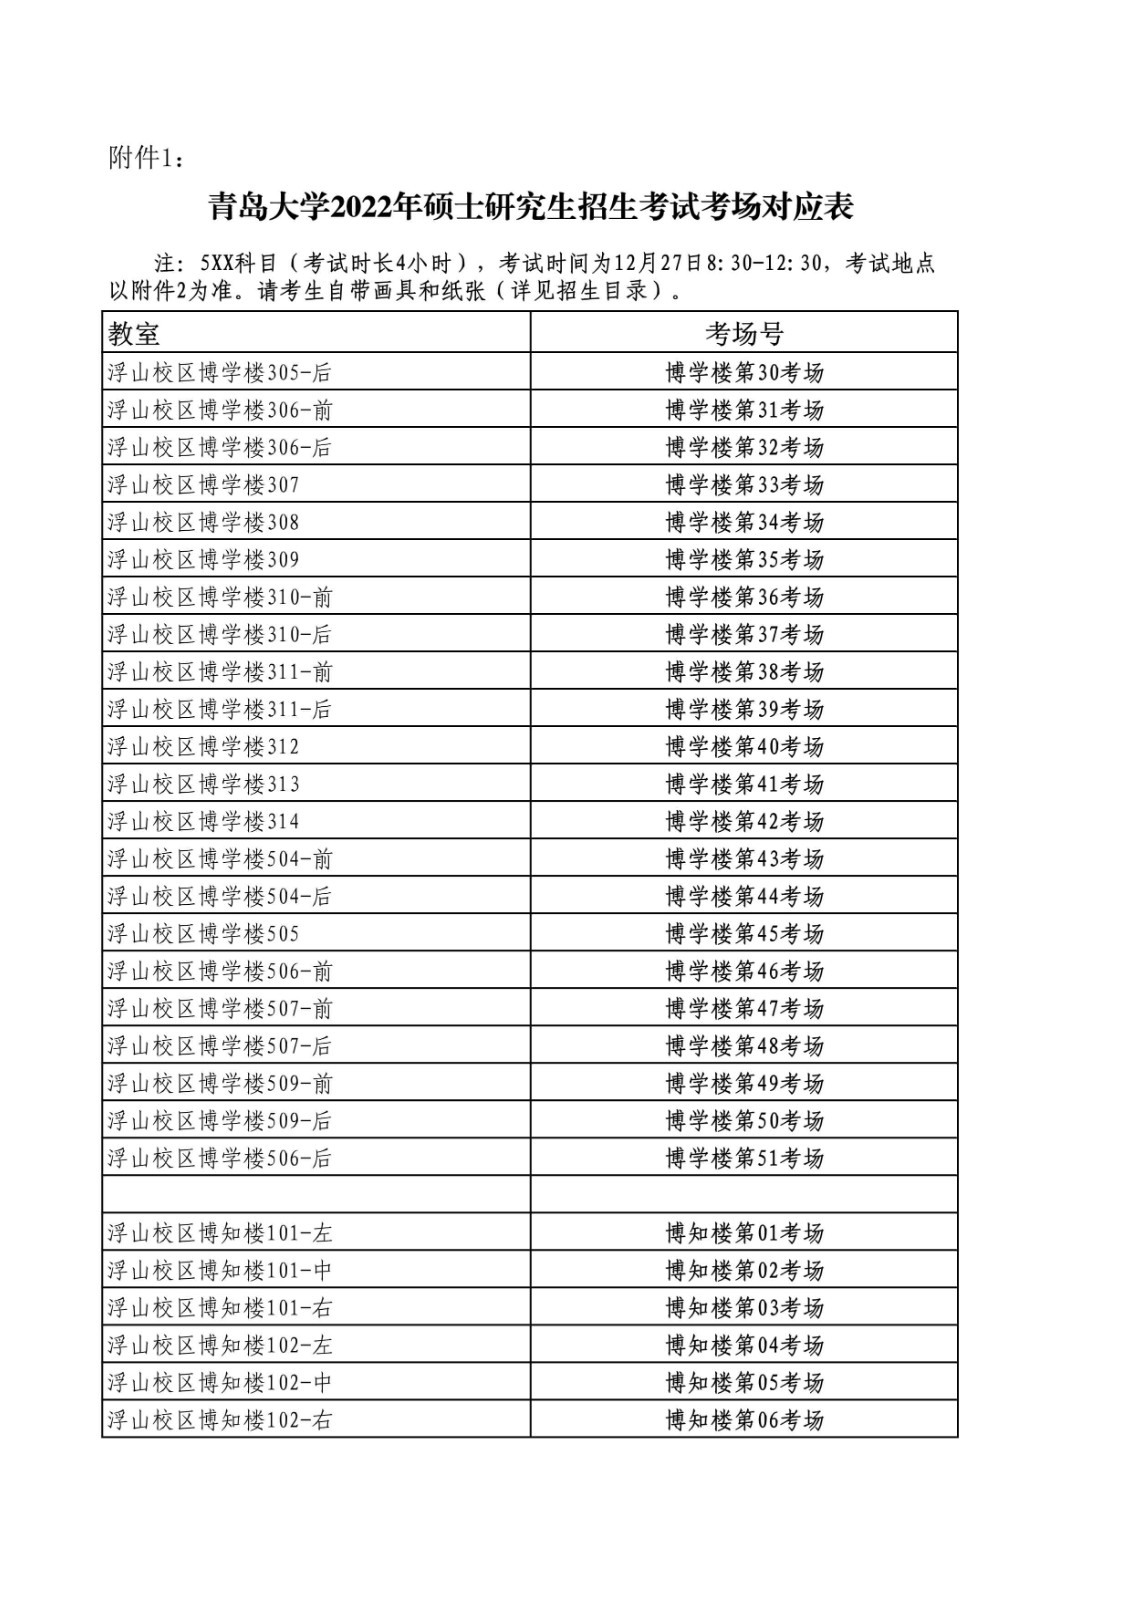 2022年全國碩士研究生招生考試(初試)青島大學考點公告(含考場安排)